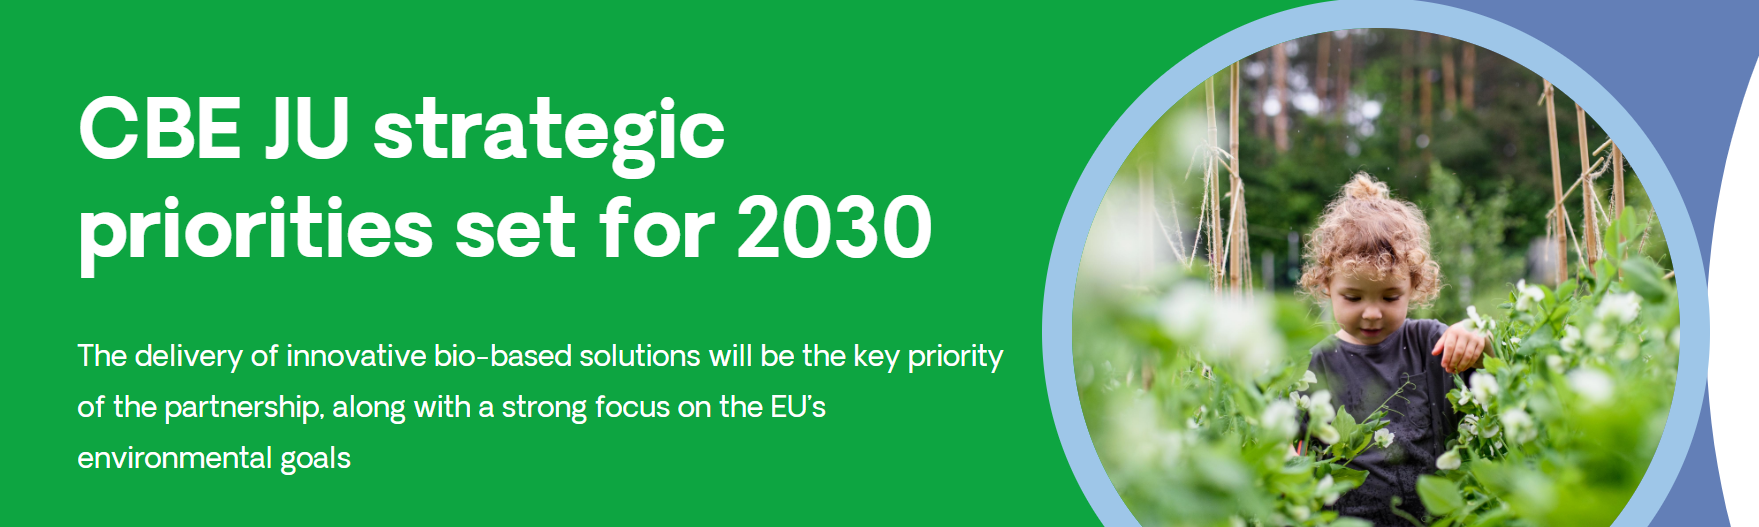 Ορισμός στρατηγικών προτεραιοτήτων της CBE JU με ορίζοντα το 2030